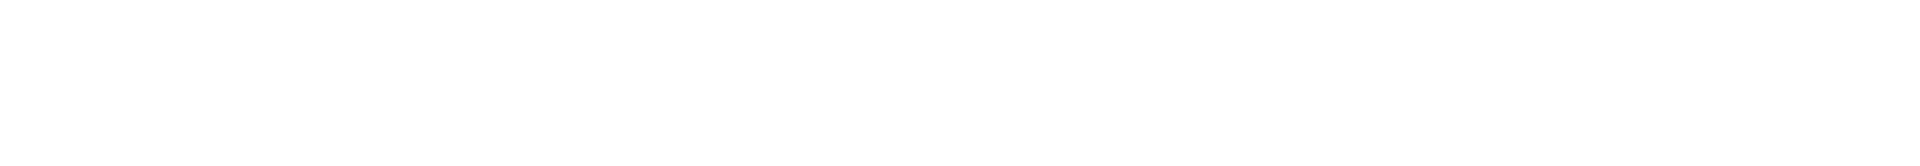 Educação Adventista